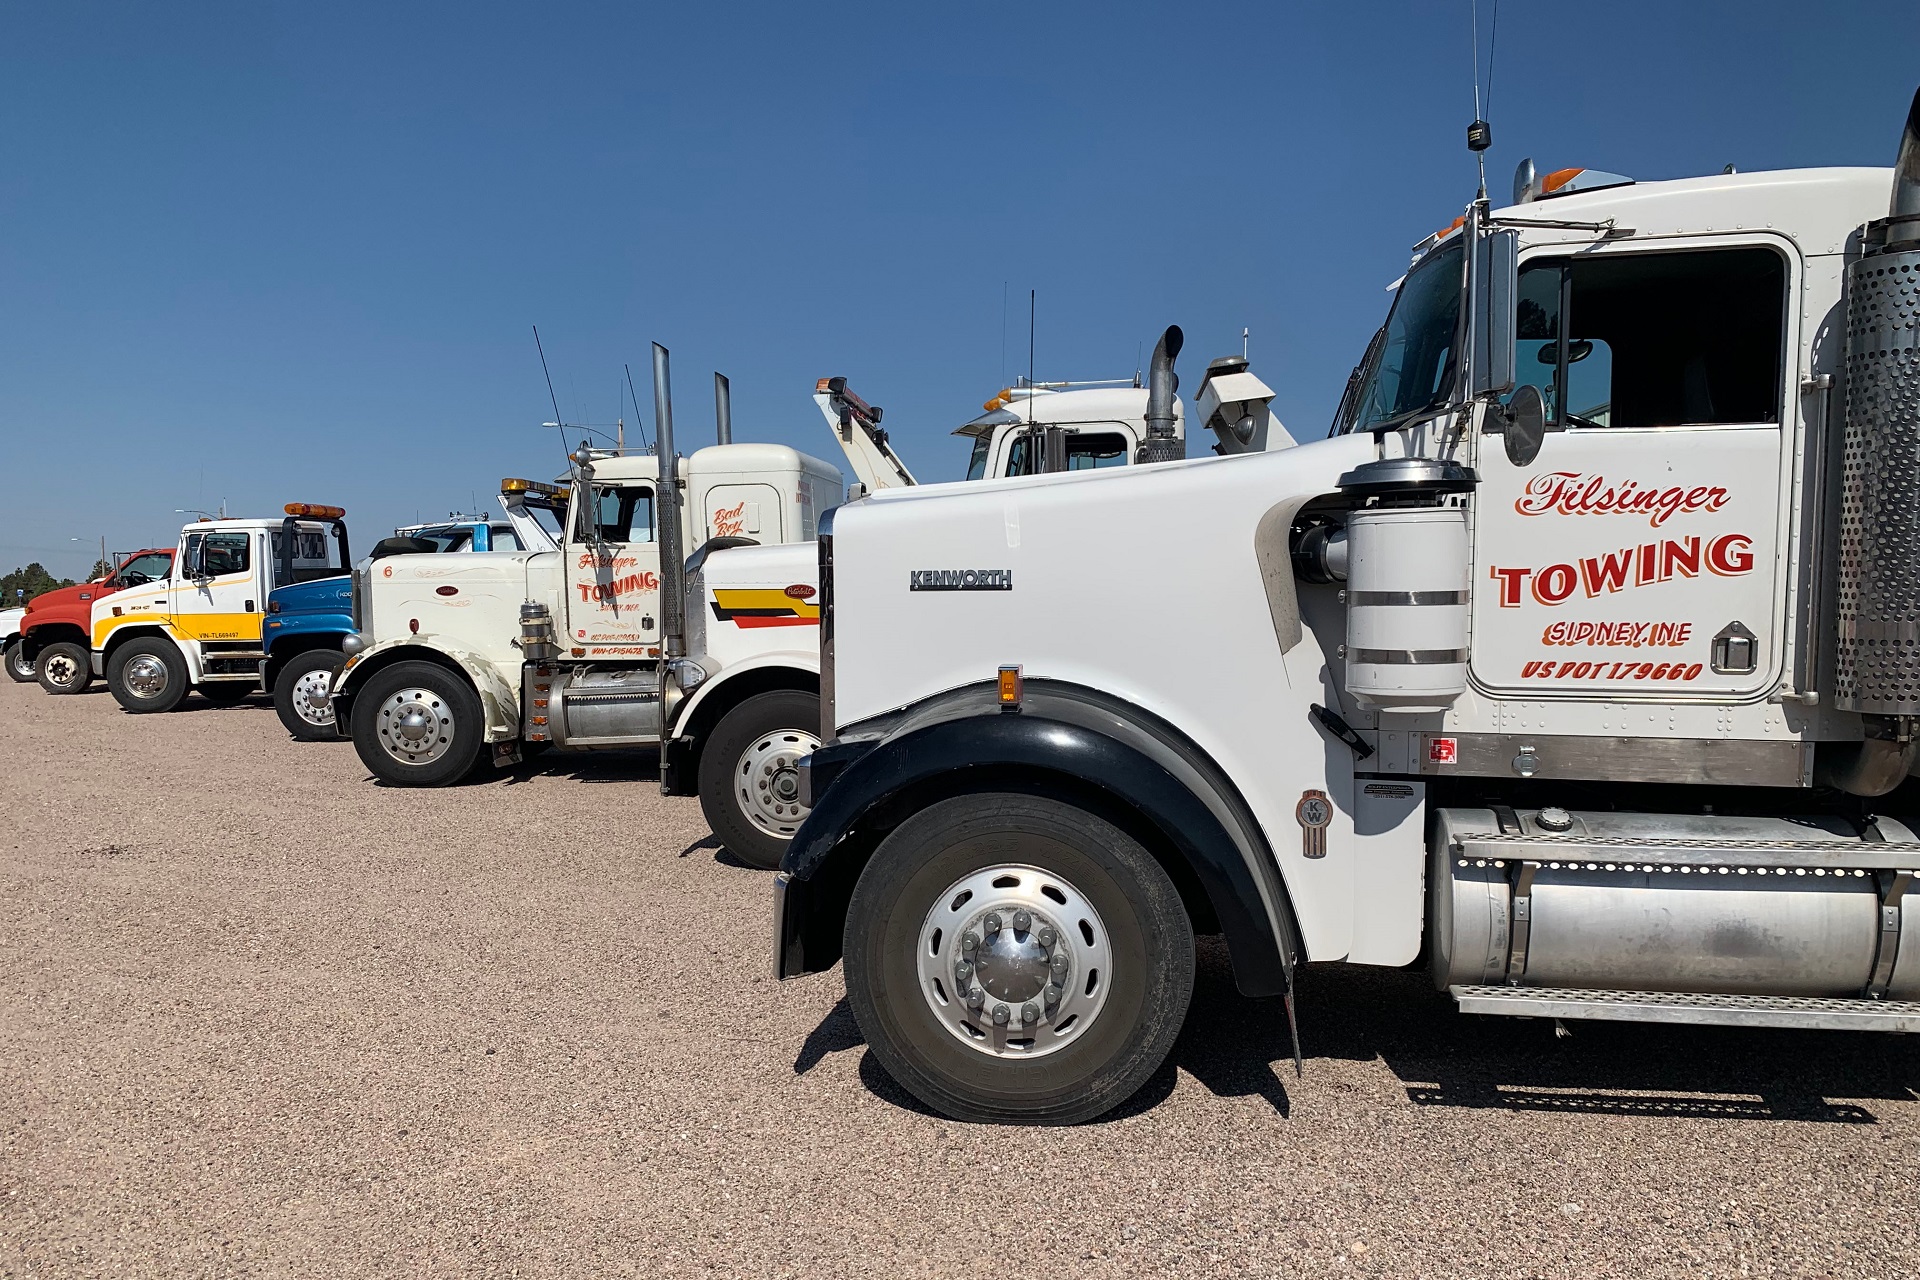 Filsinger Towing Trucks, Sidney, NE